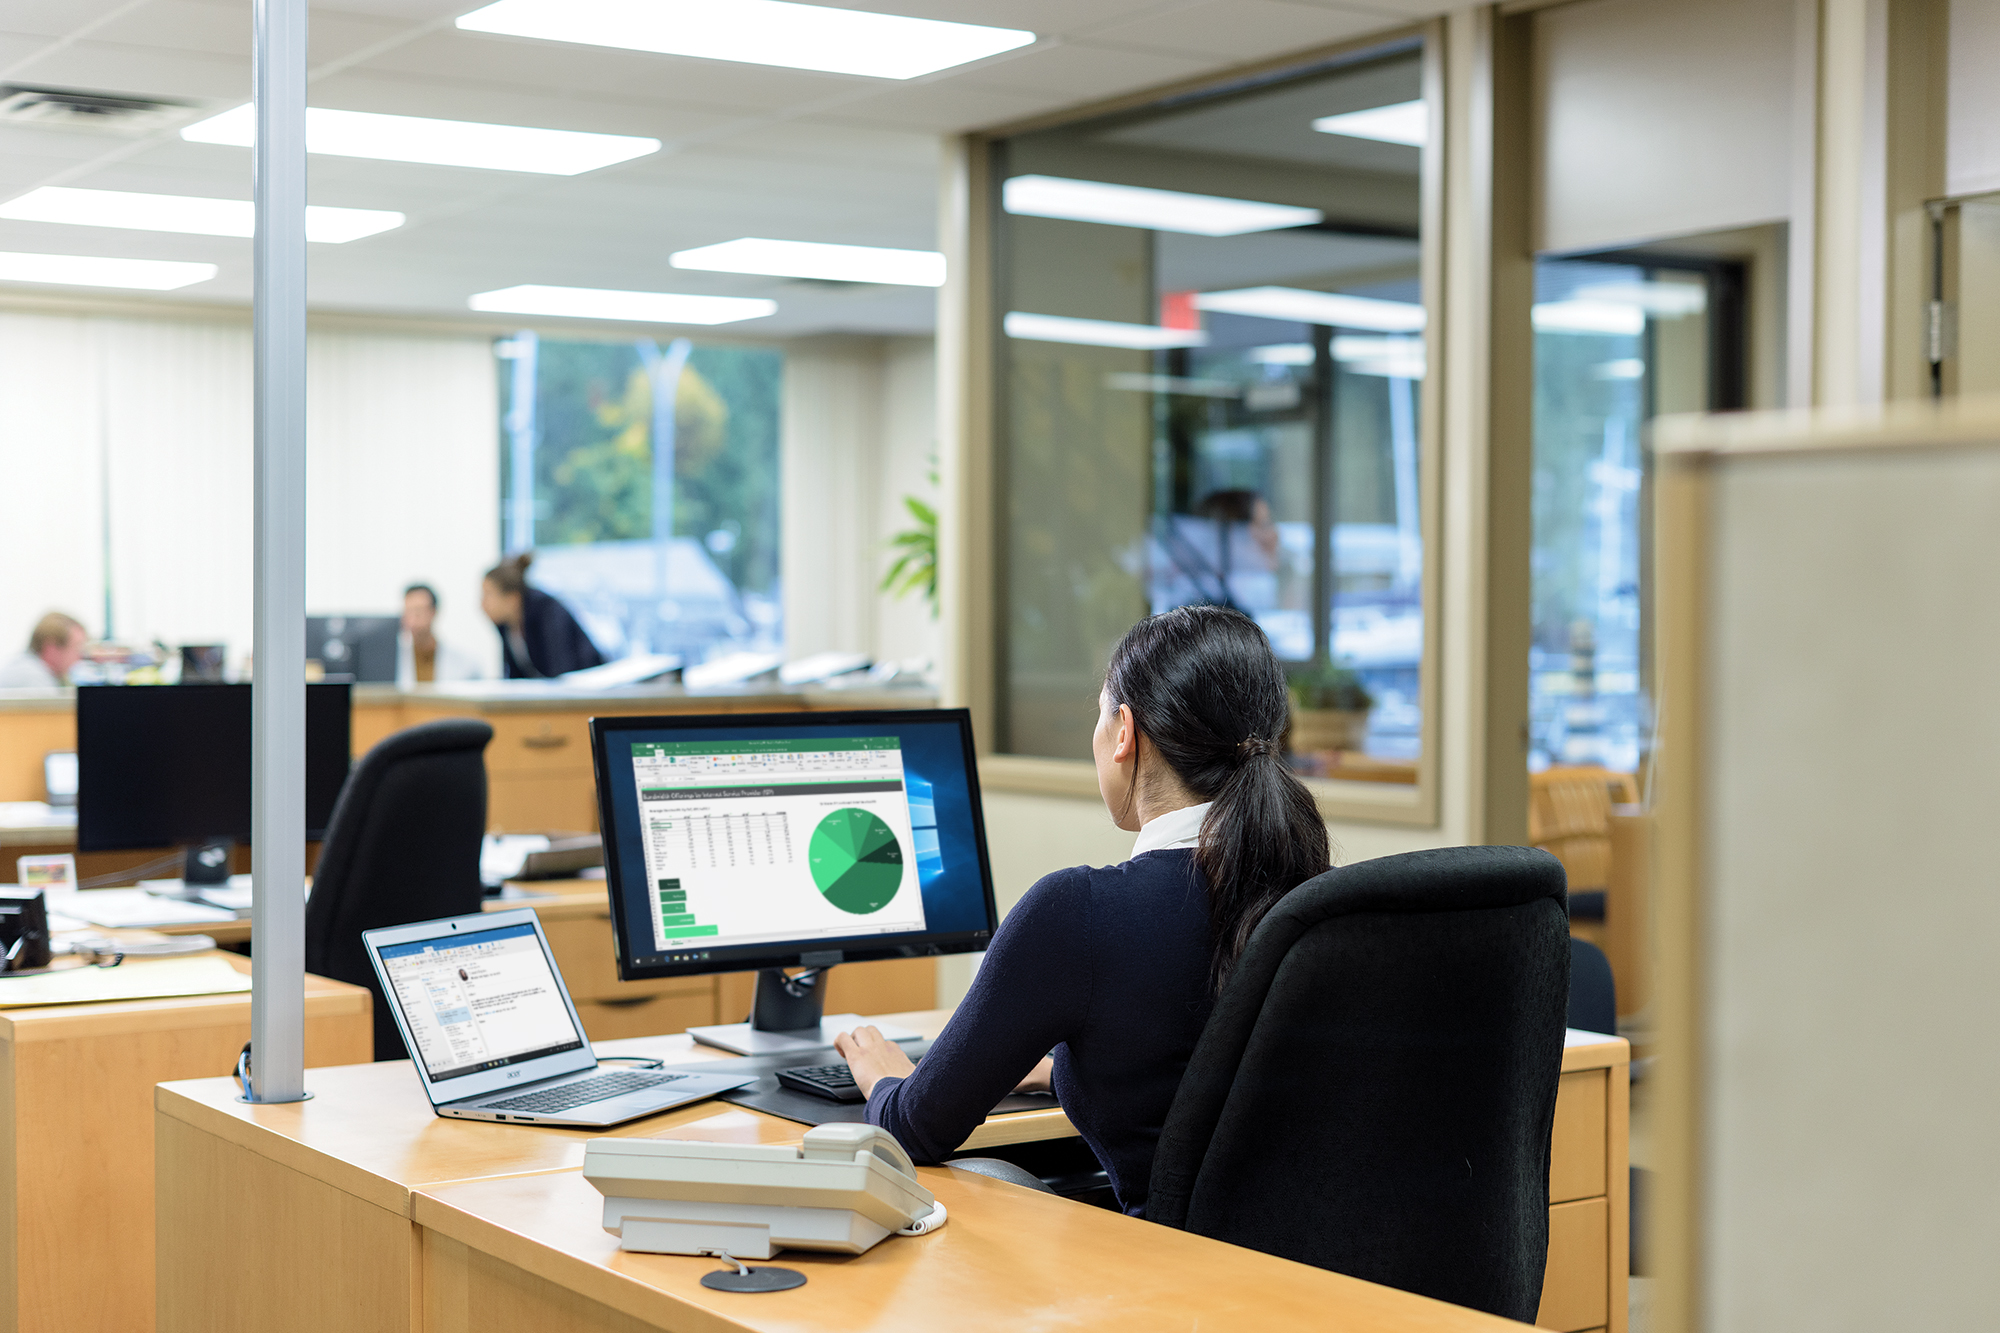 En kontormedarbejder får vist et diagram og tabeller på en skærm, mens andre mødes i baggrunden.